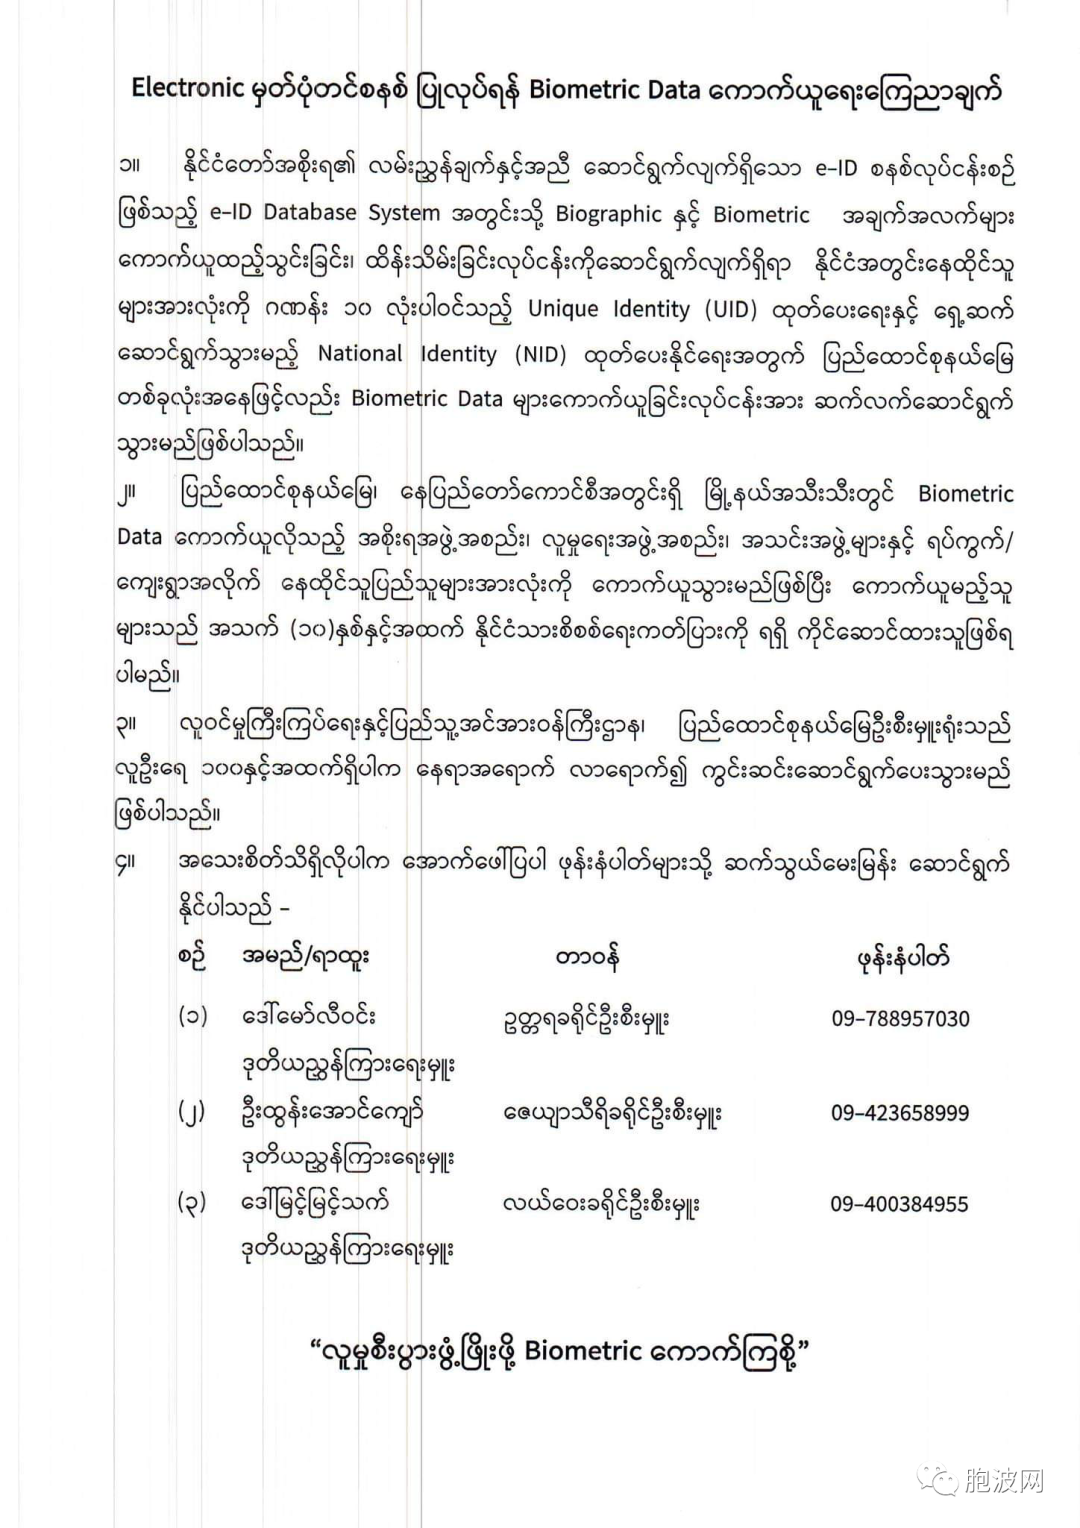 缅甸为落实电子身份证开始搜集生物识别数据